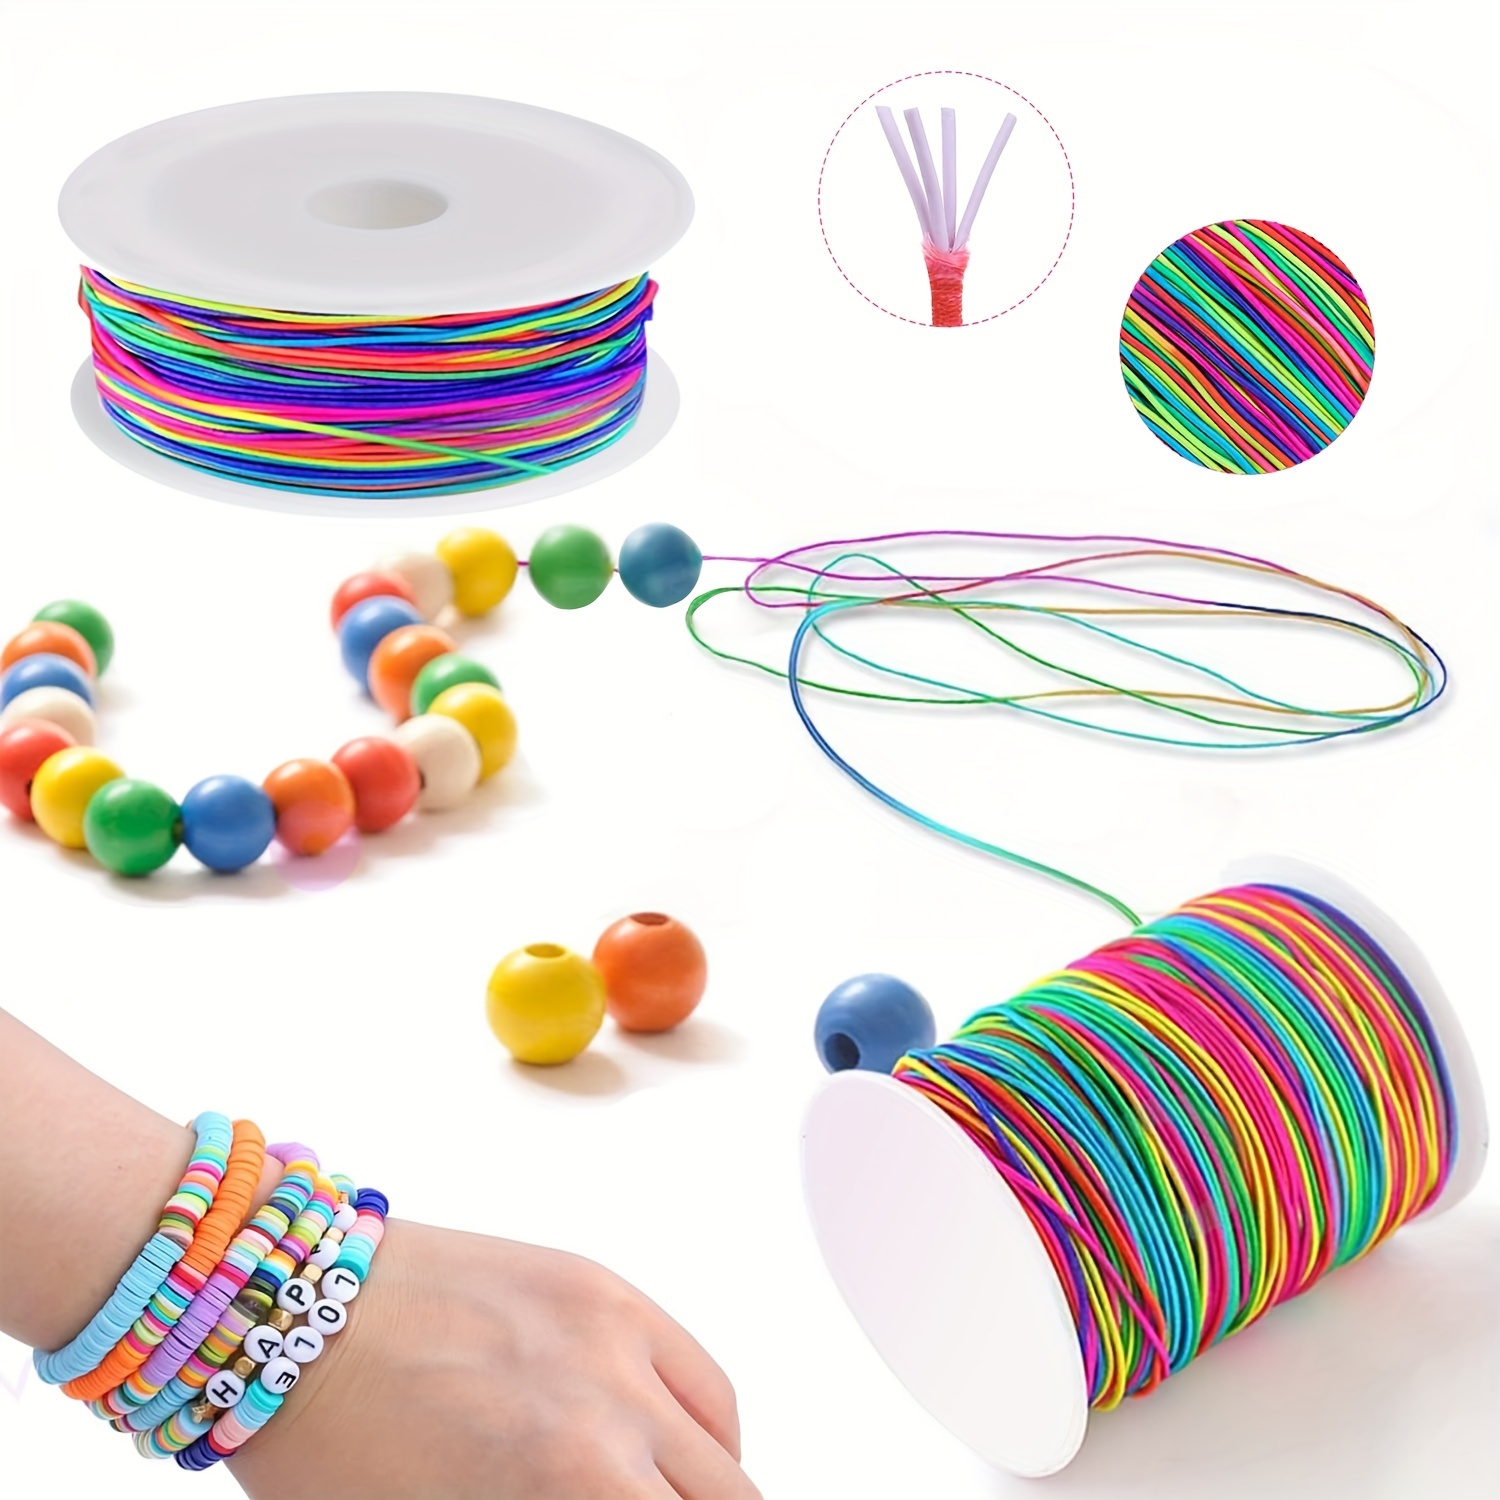 Fil Elastique Transparent pour Bracelet 1mm 100m Fil de Nylon pour  Perles,Cordon Extensible et Résistant pour Bijoux Artisanat Faire :  : Cuisine et Maison